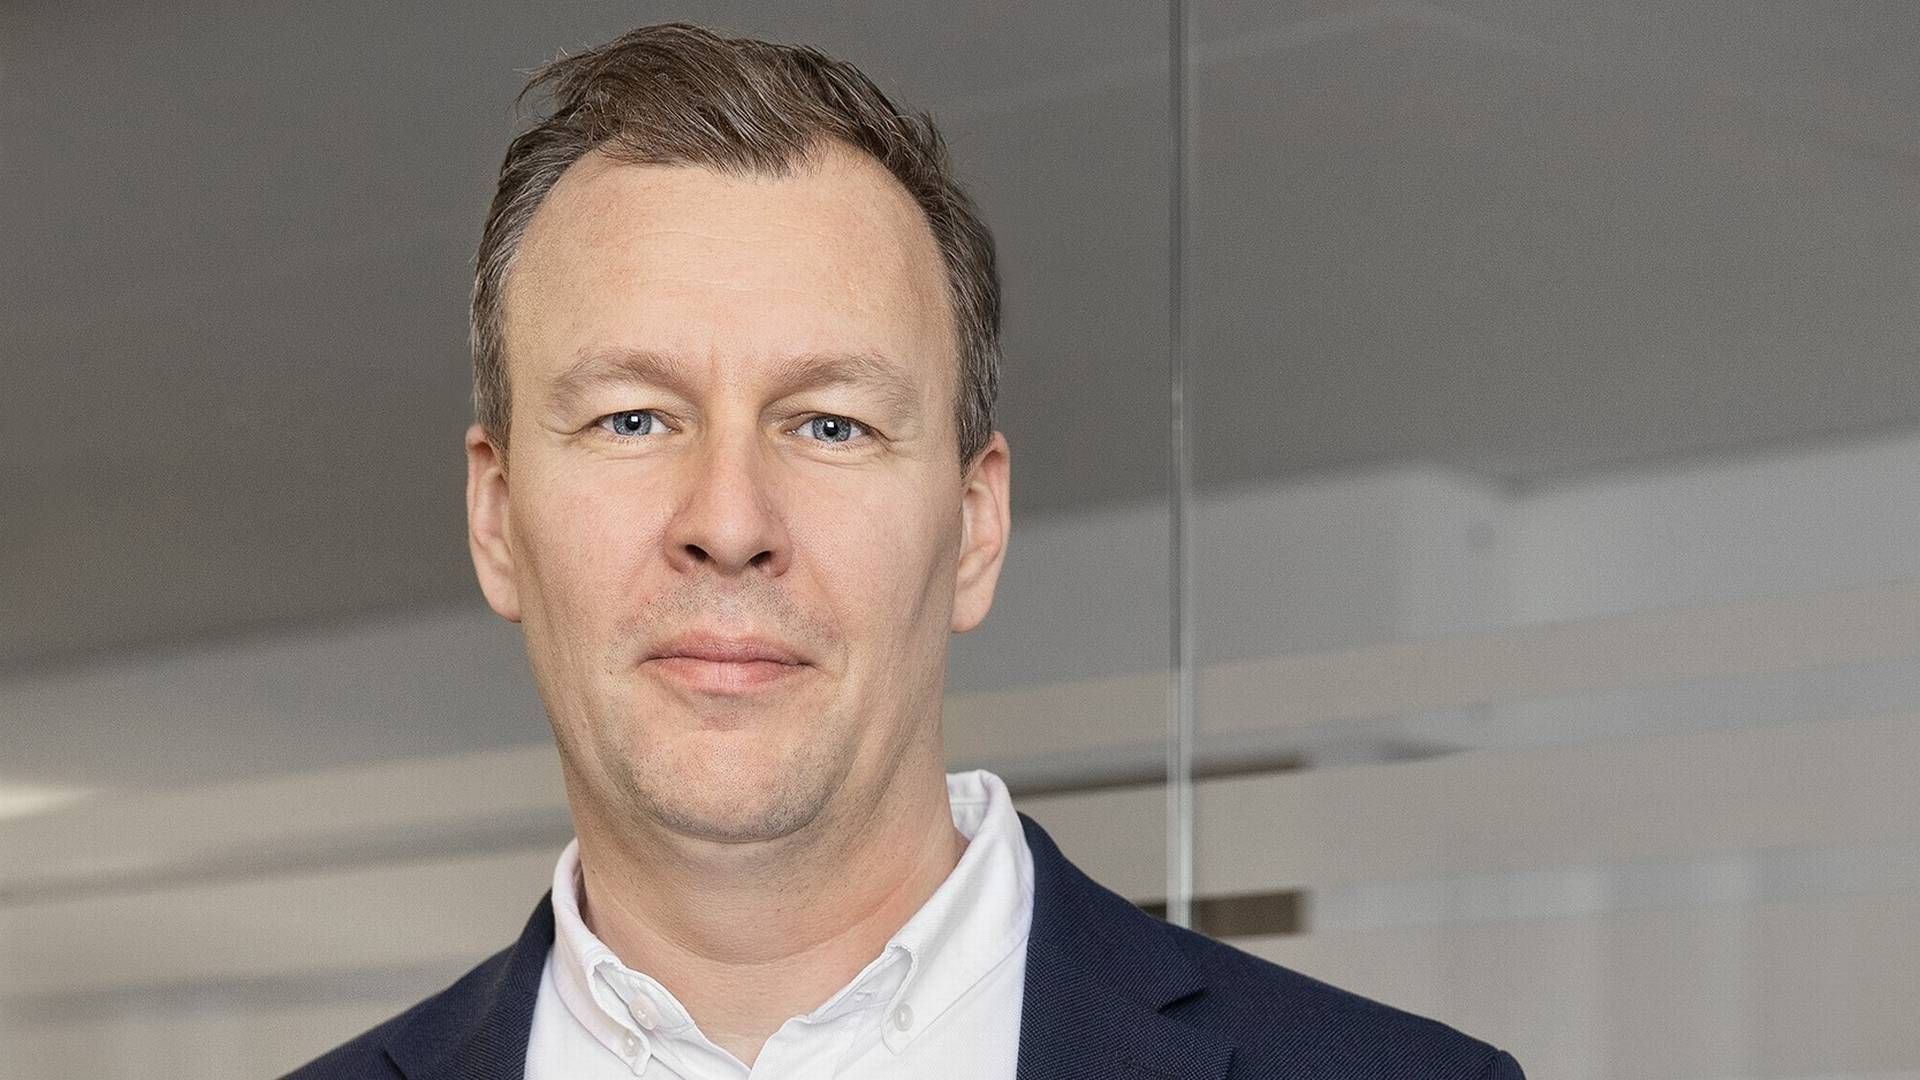 Anders Medin Feldbæk er direktør for Byggeri i Danmark hos tyske Züblin.